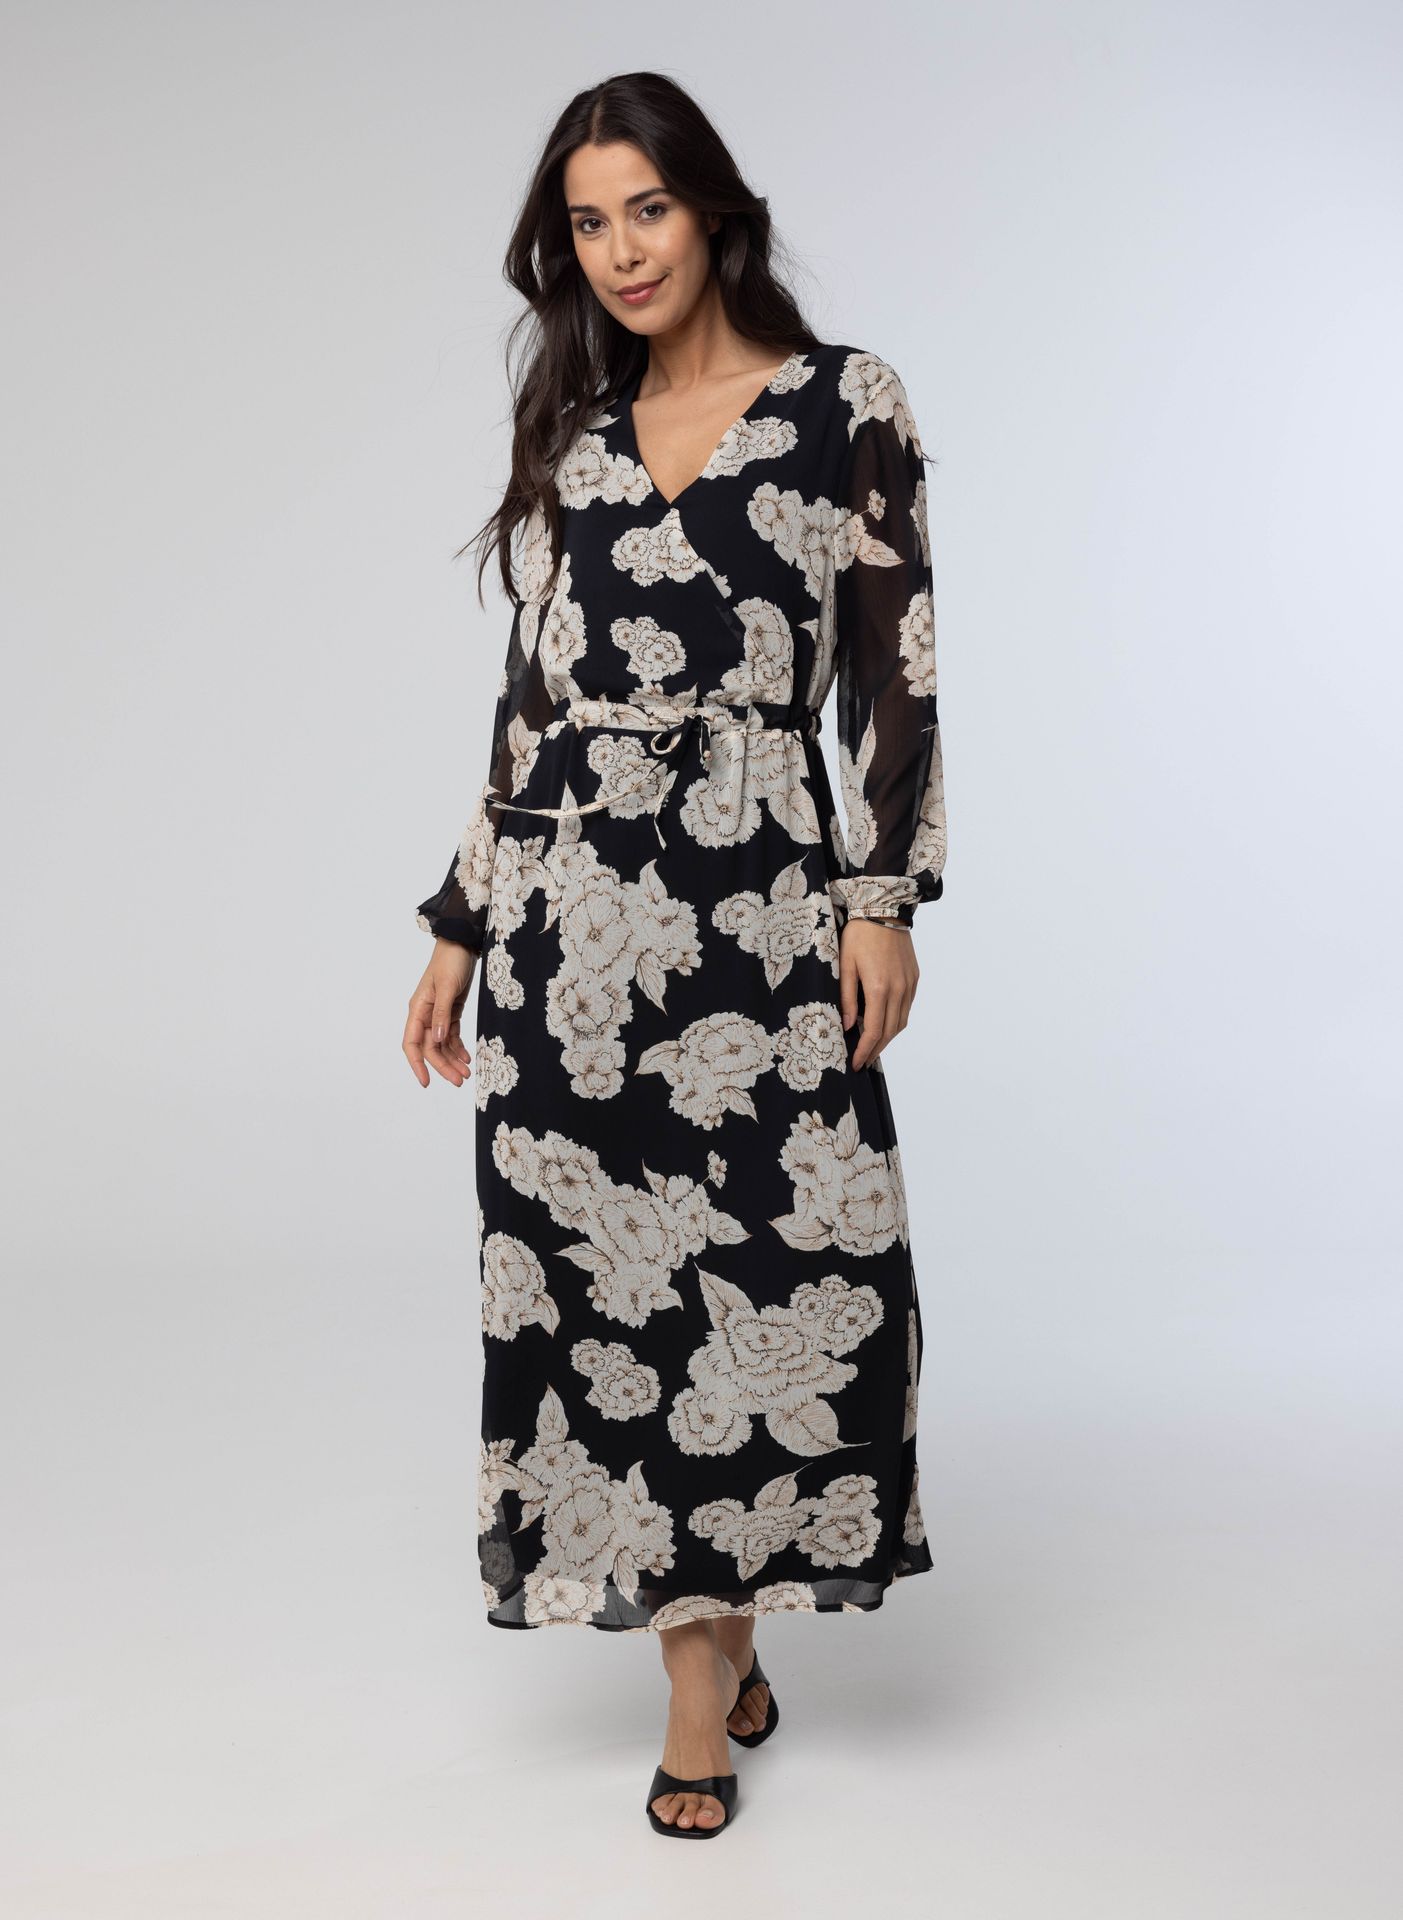  Maxi jurk met bloemenprint black multicolor 214237-020-42